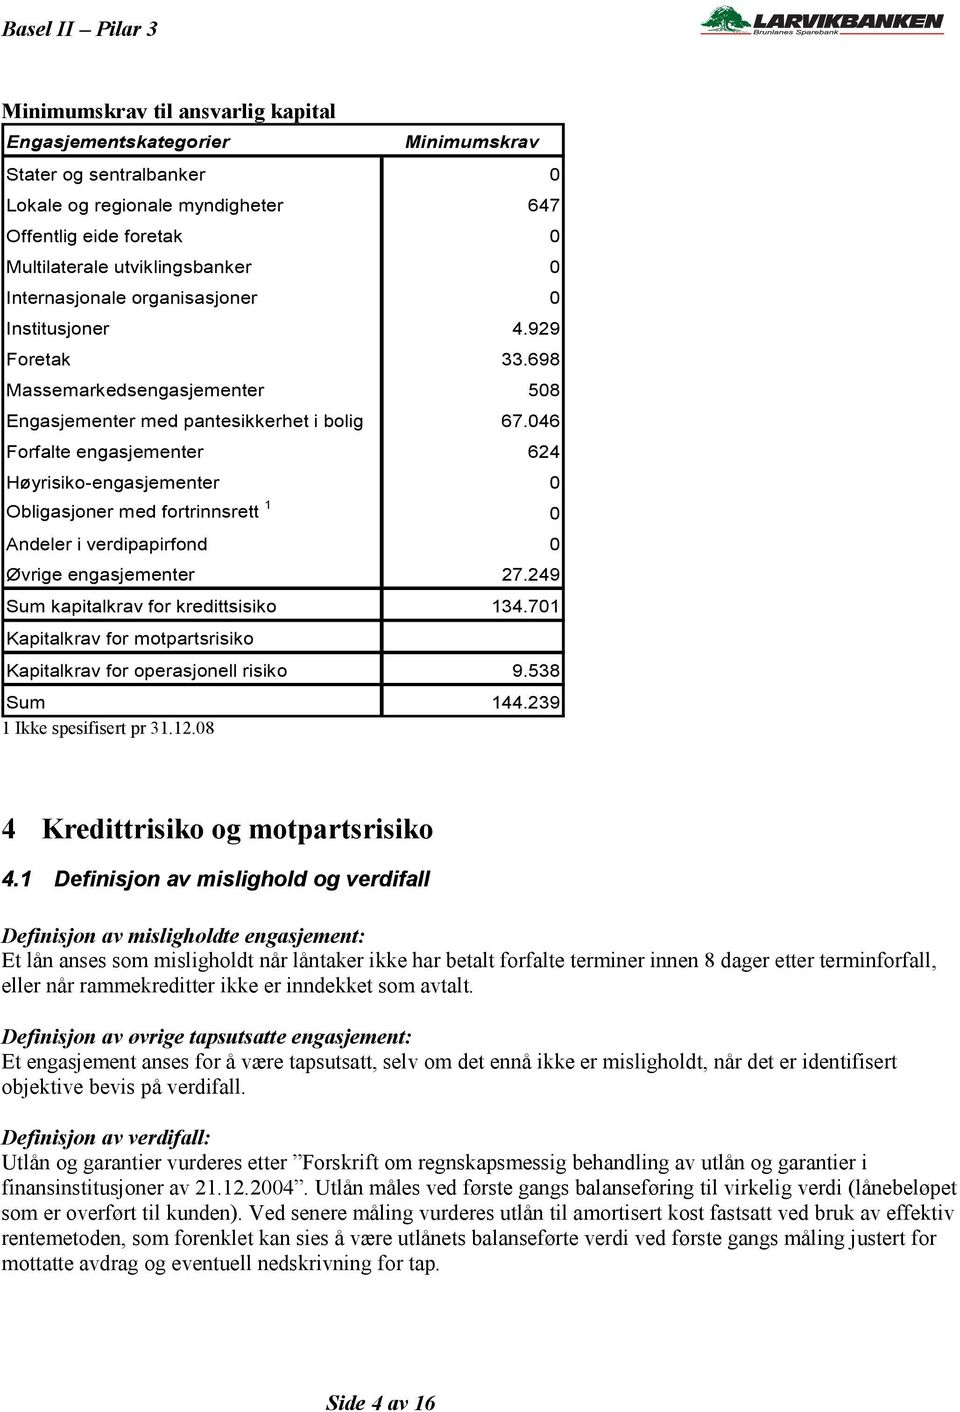 046 Forfalte engasjementer 624 Høyrisiko-engasjementer 0 Obligasjoner med fortrinnsrett 1 0 Andeler i verdipapirfond 0 Øvrige engasjementer 27.249 Sum kapitalkrav for kredittsisiko 134.